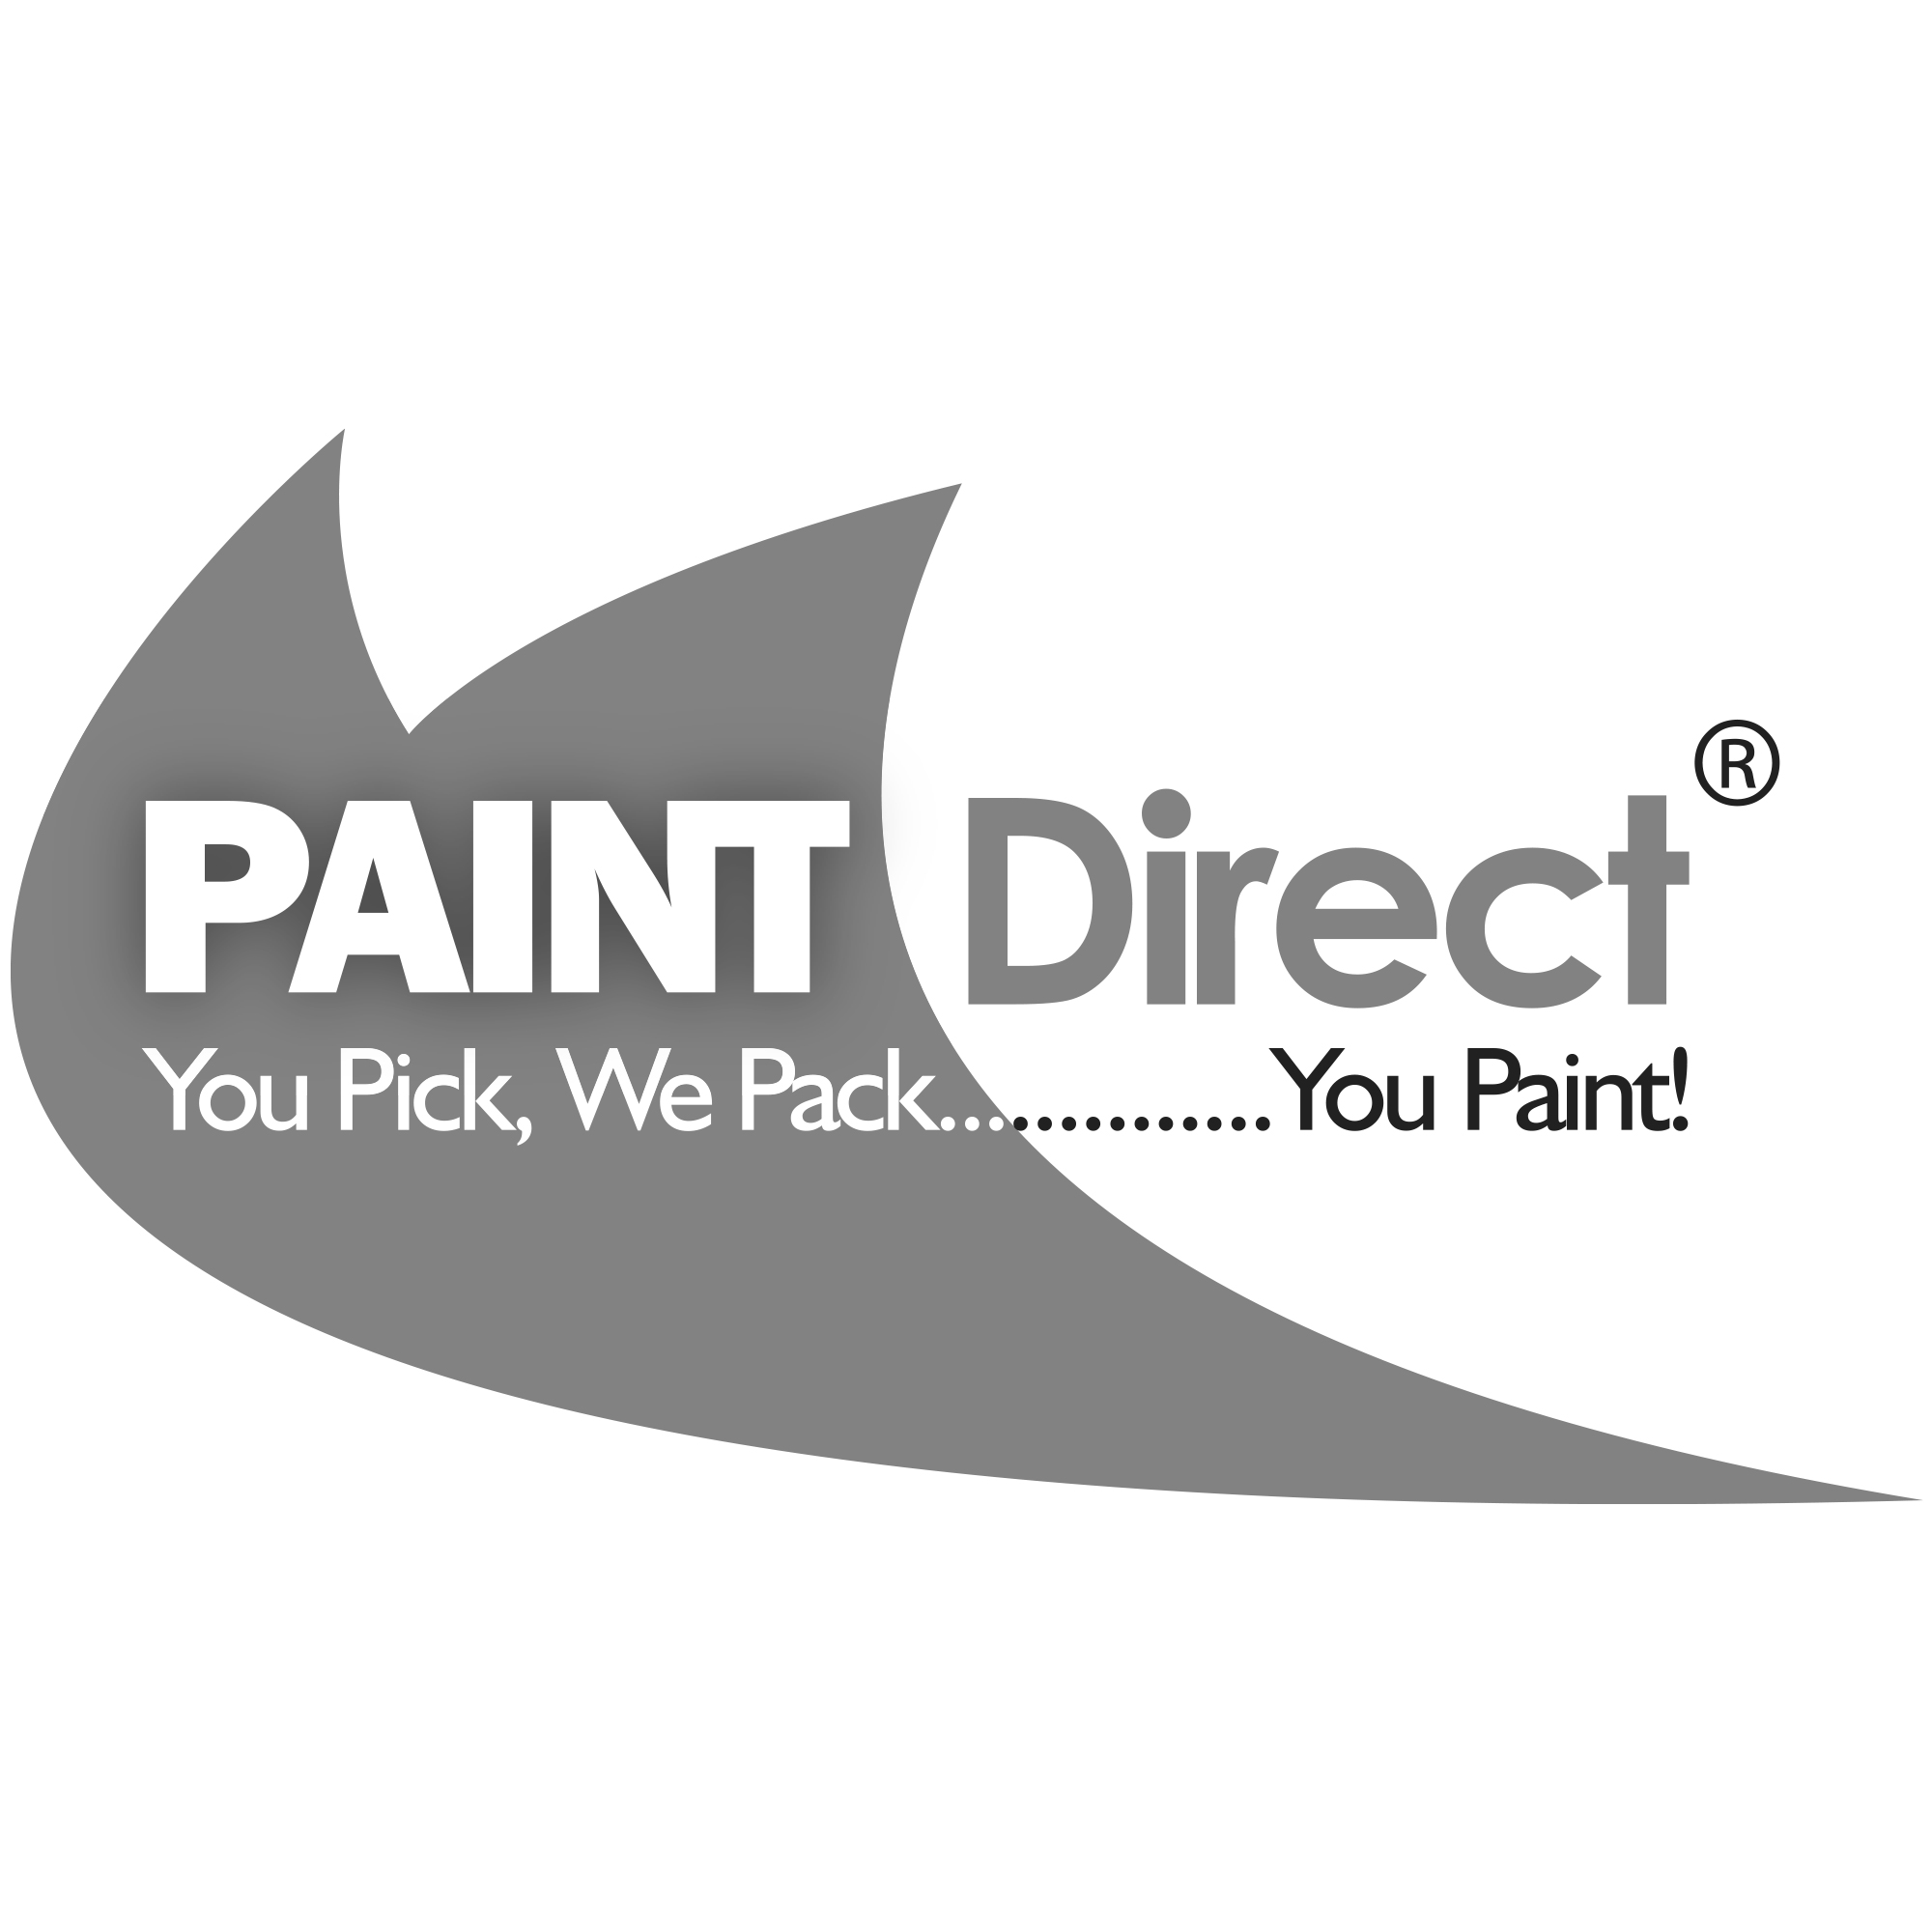 Paint Direct